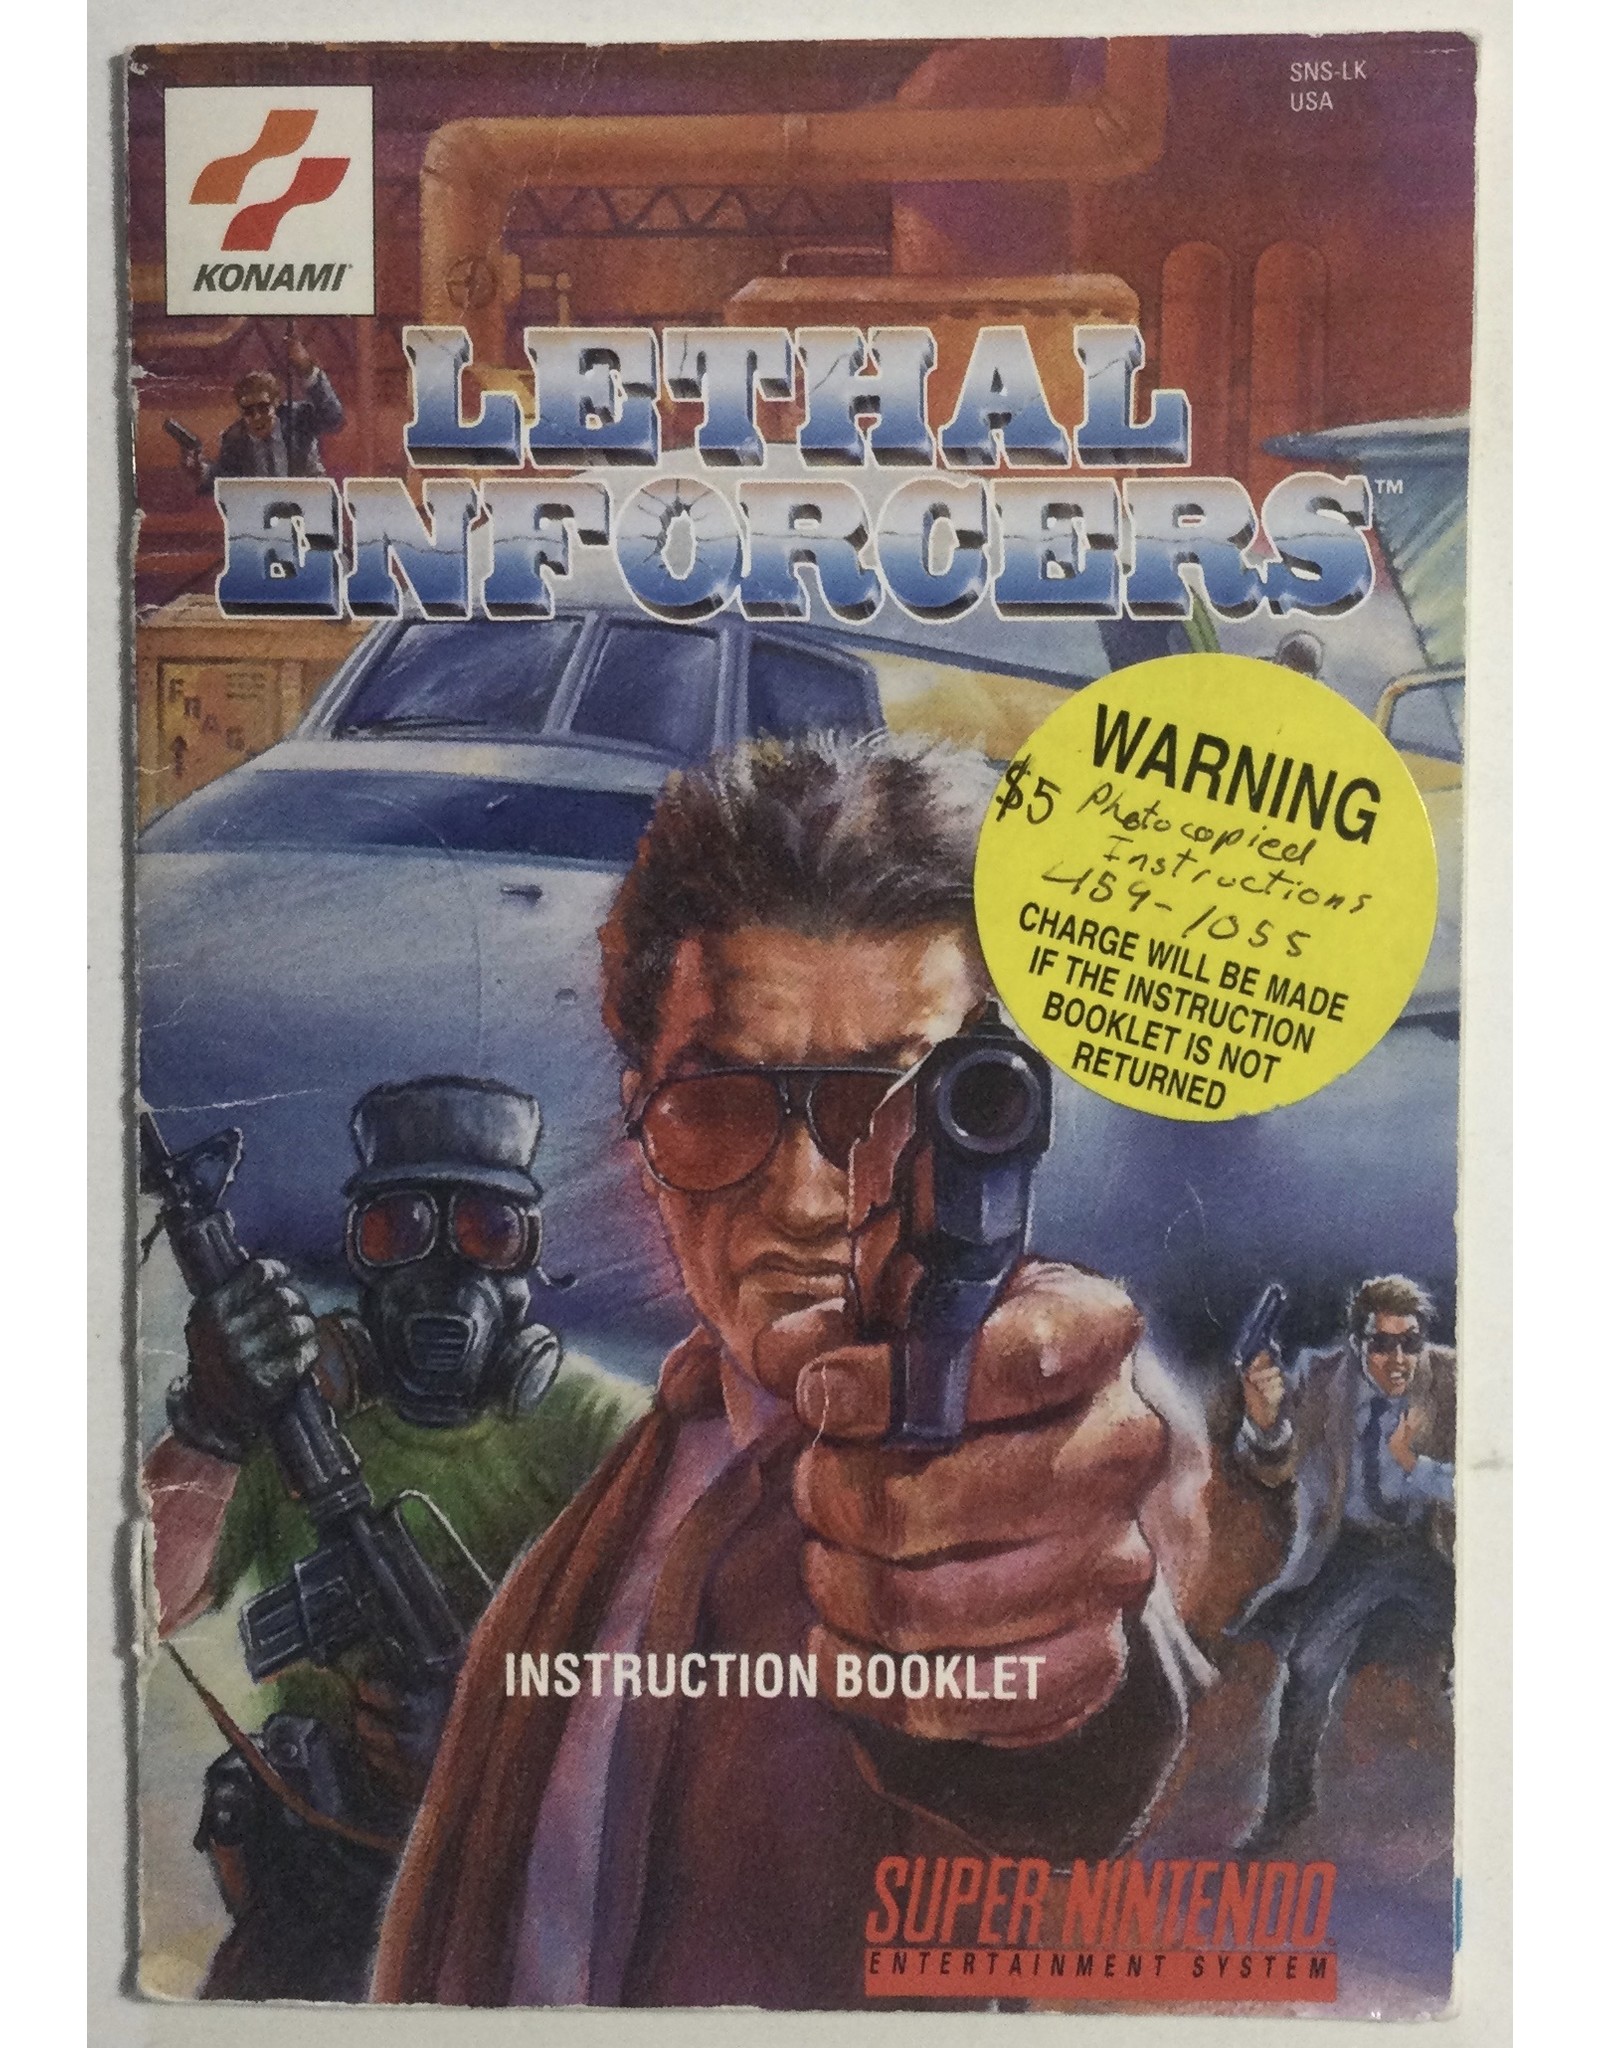 KONAMI Lethal Enforcers for Super Nintendo Entertainment System (SNES)